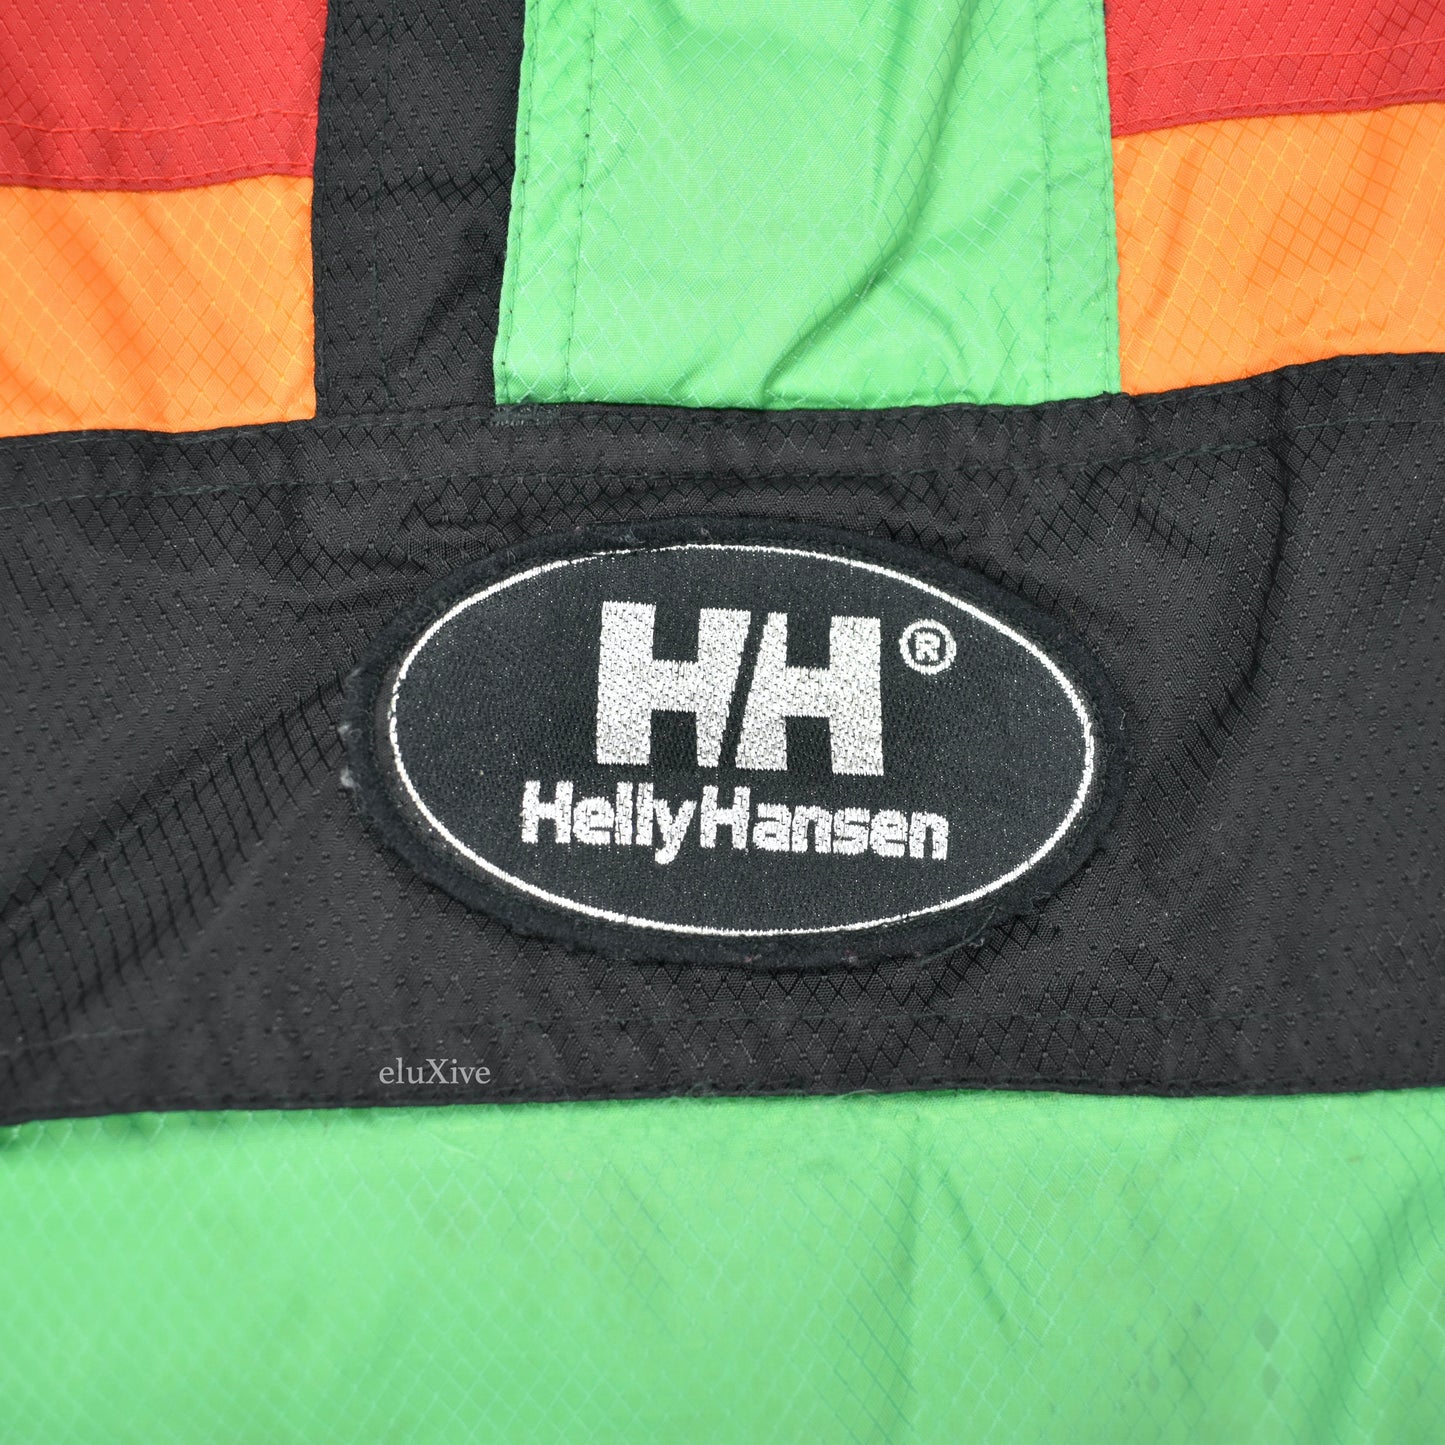 Helly Hansen - Vintage Green Anorak Jacket